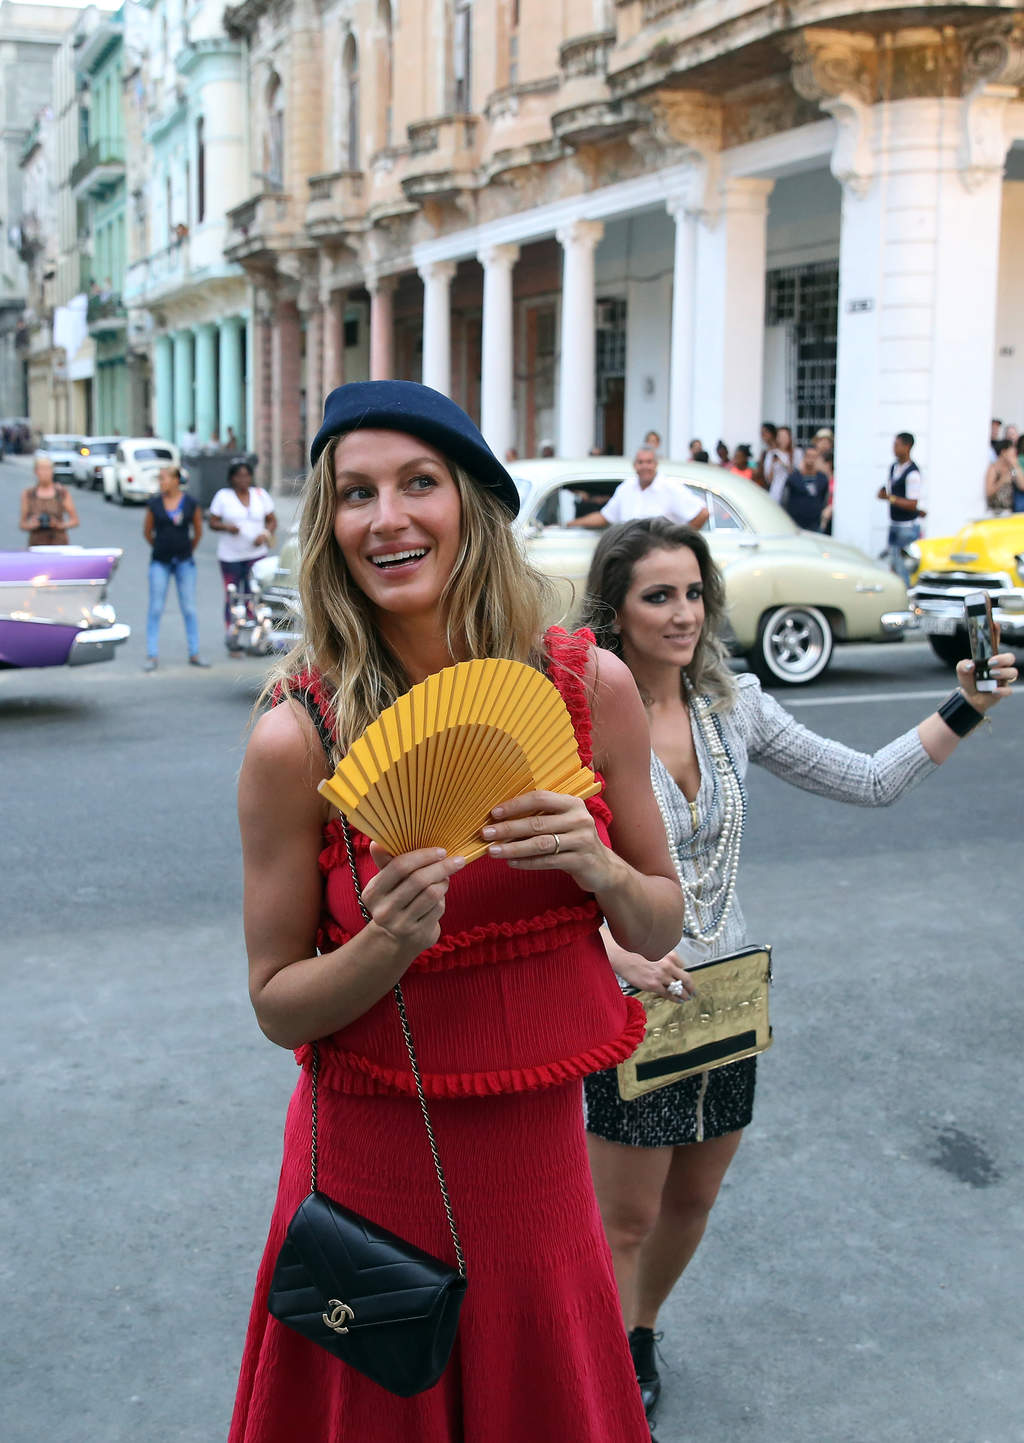 La supermodelo brasileña Gisele Bündchen, con una boina francesa y contando en español lo mucho que 'le ha encantado Cuba'. (EFE)
